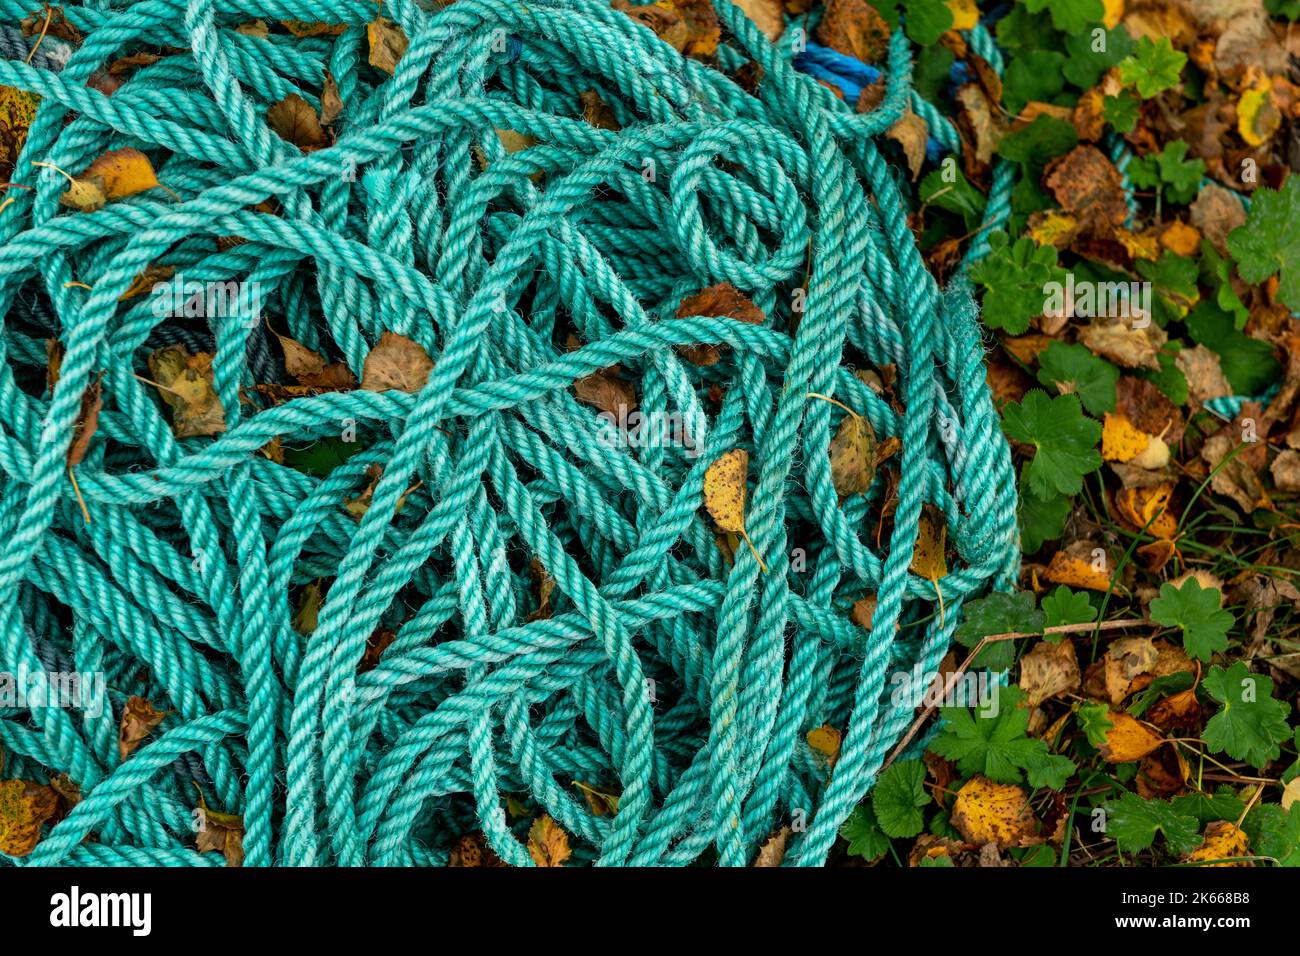 Arrière-plan de corde vert abstrait - photo de stock Banque D'Images